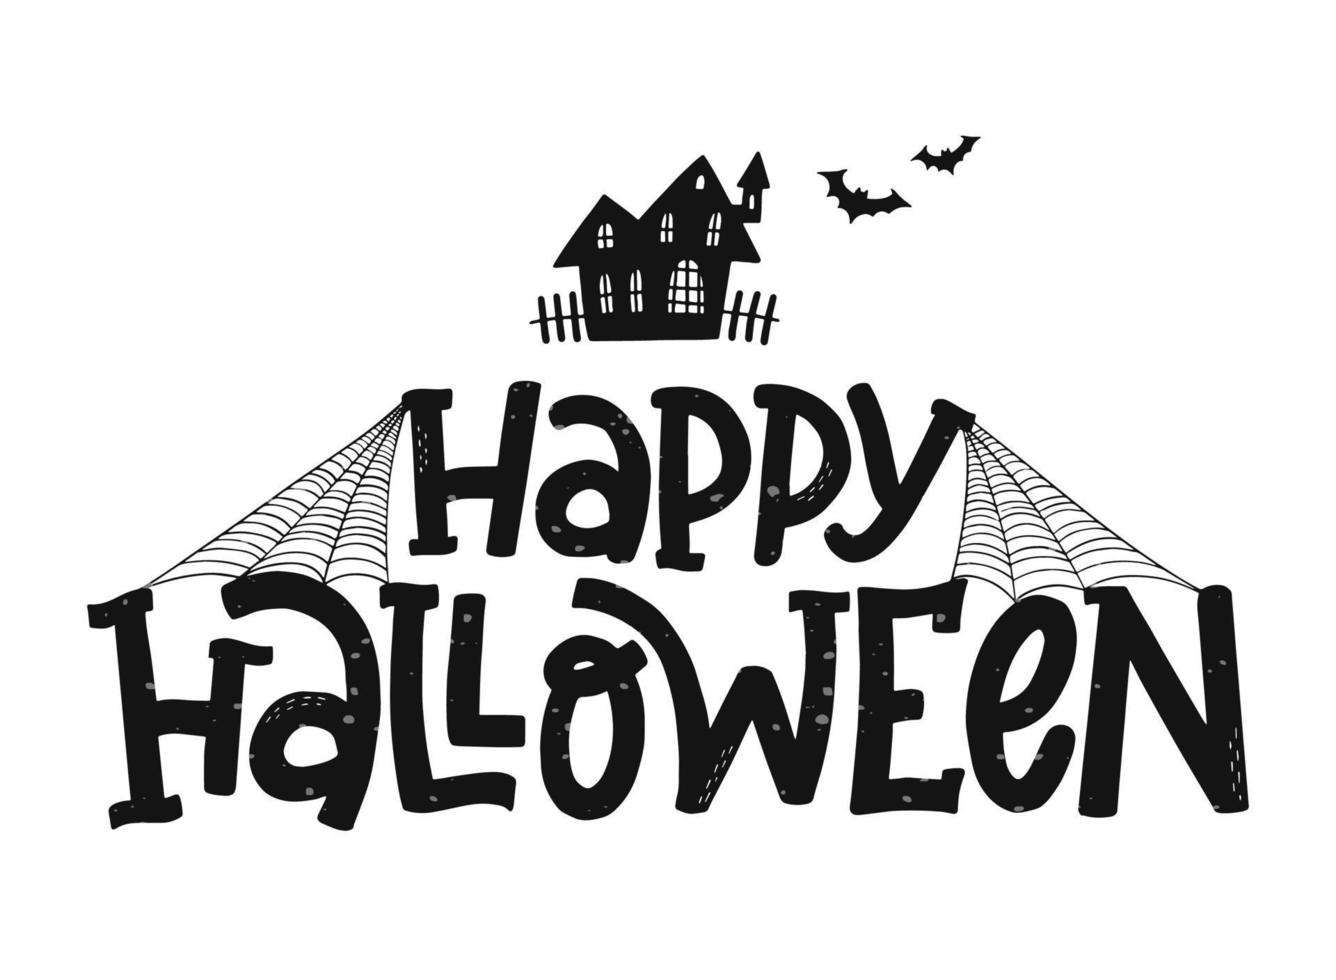 feliz citação de tipografia de halloween decorada com teia de aranha e rabiscos em fundo branco. bom para cartazes, cartões, gravuras, convites, banners, sinais, etc. eps 10 vetor